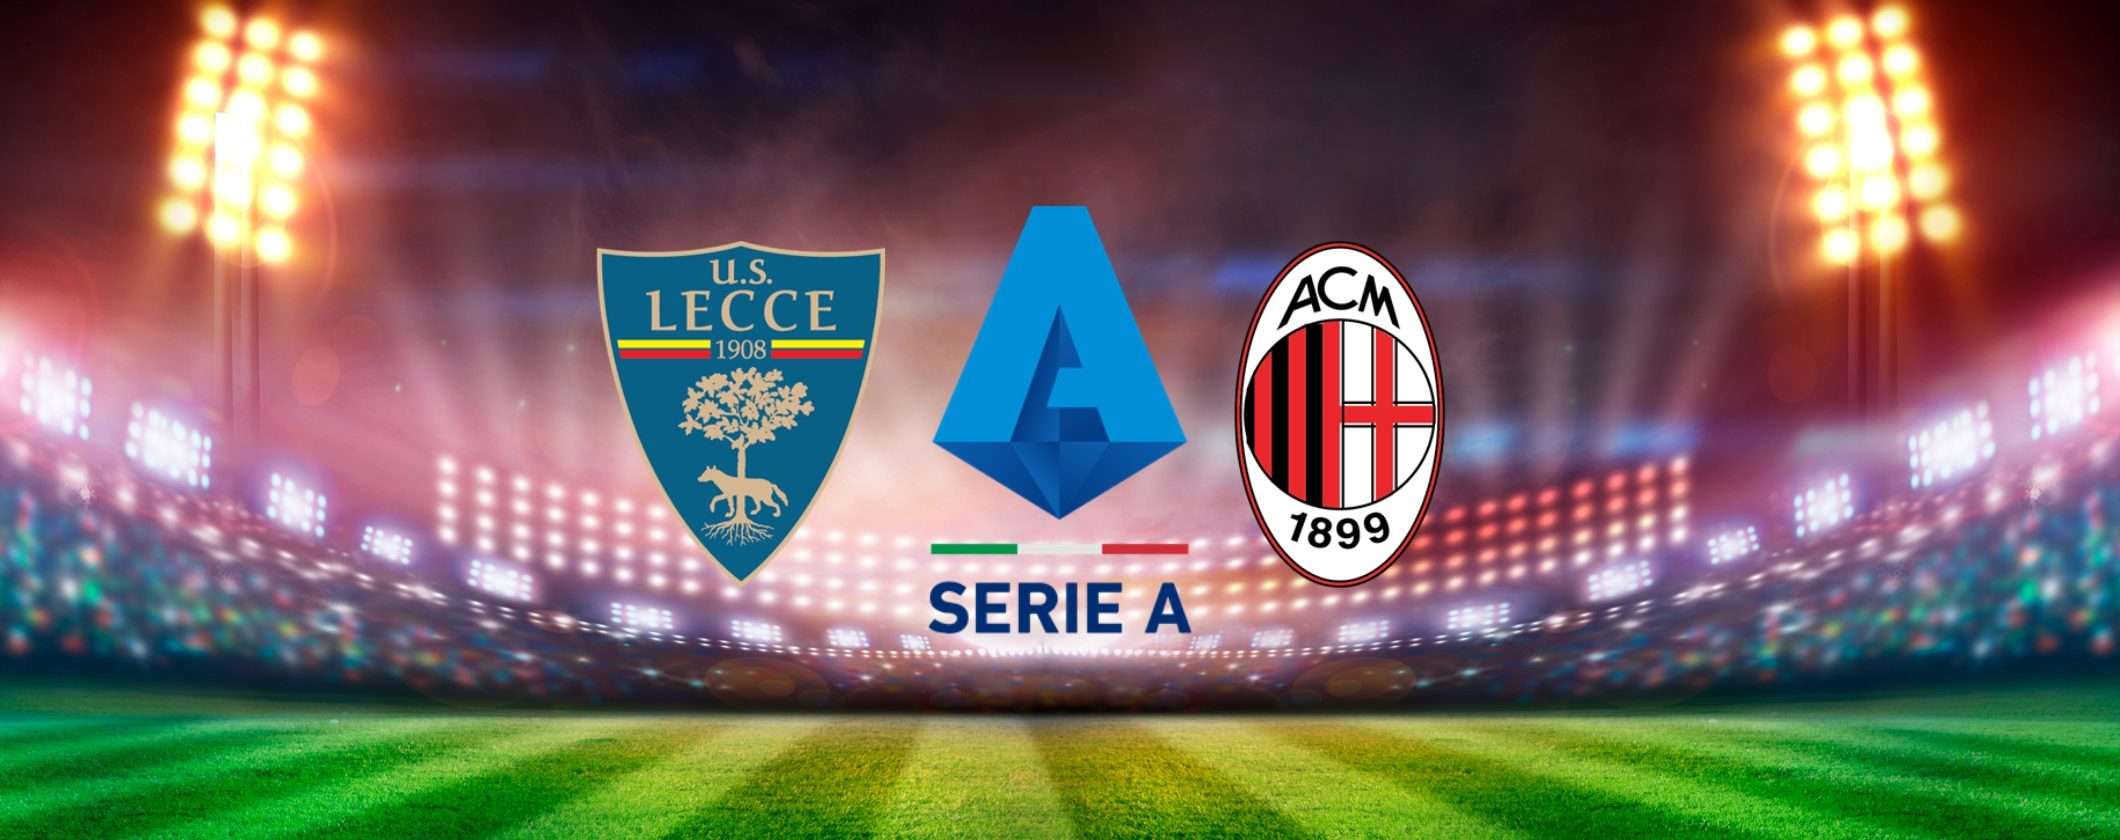 Come vedere Lecce-Milan in streaming dall'estero